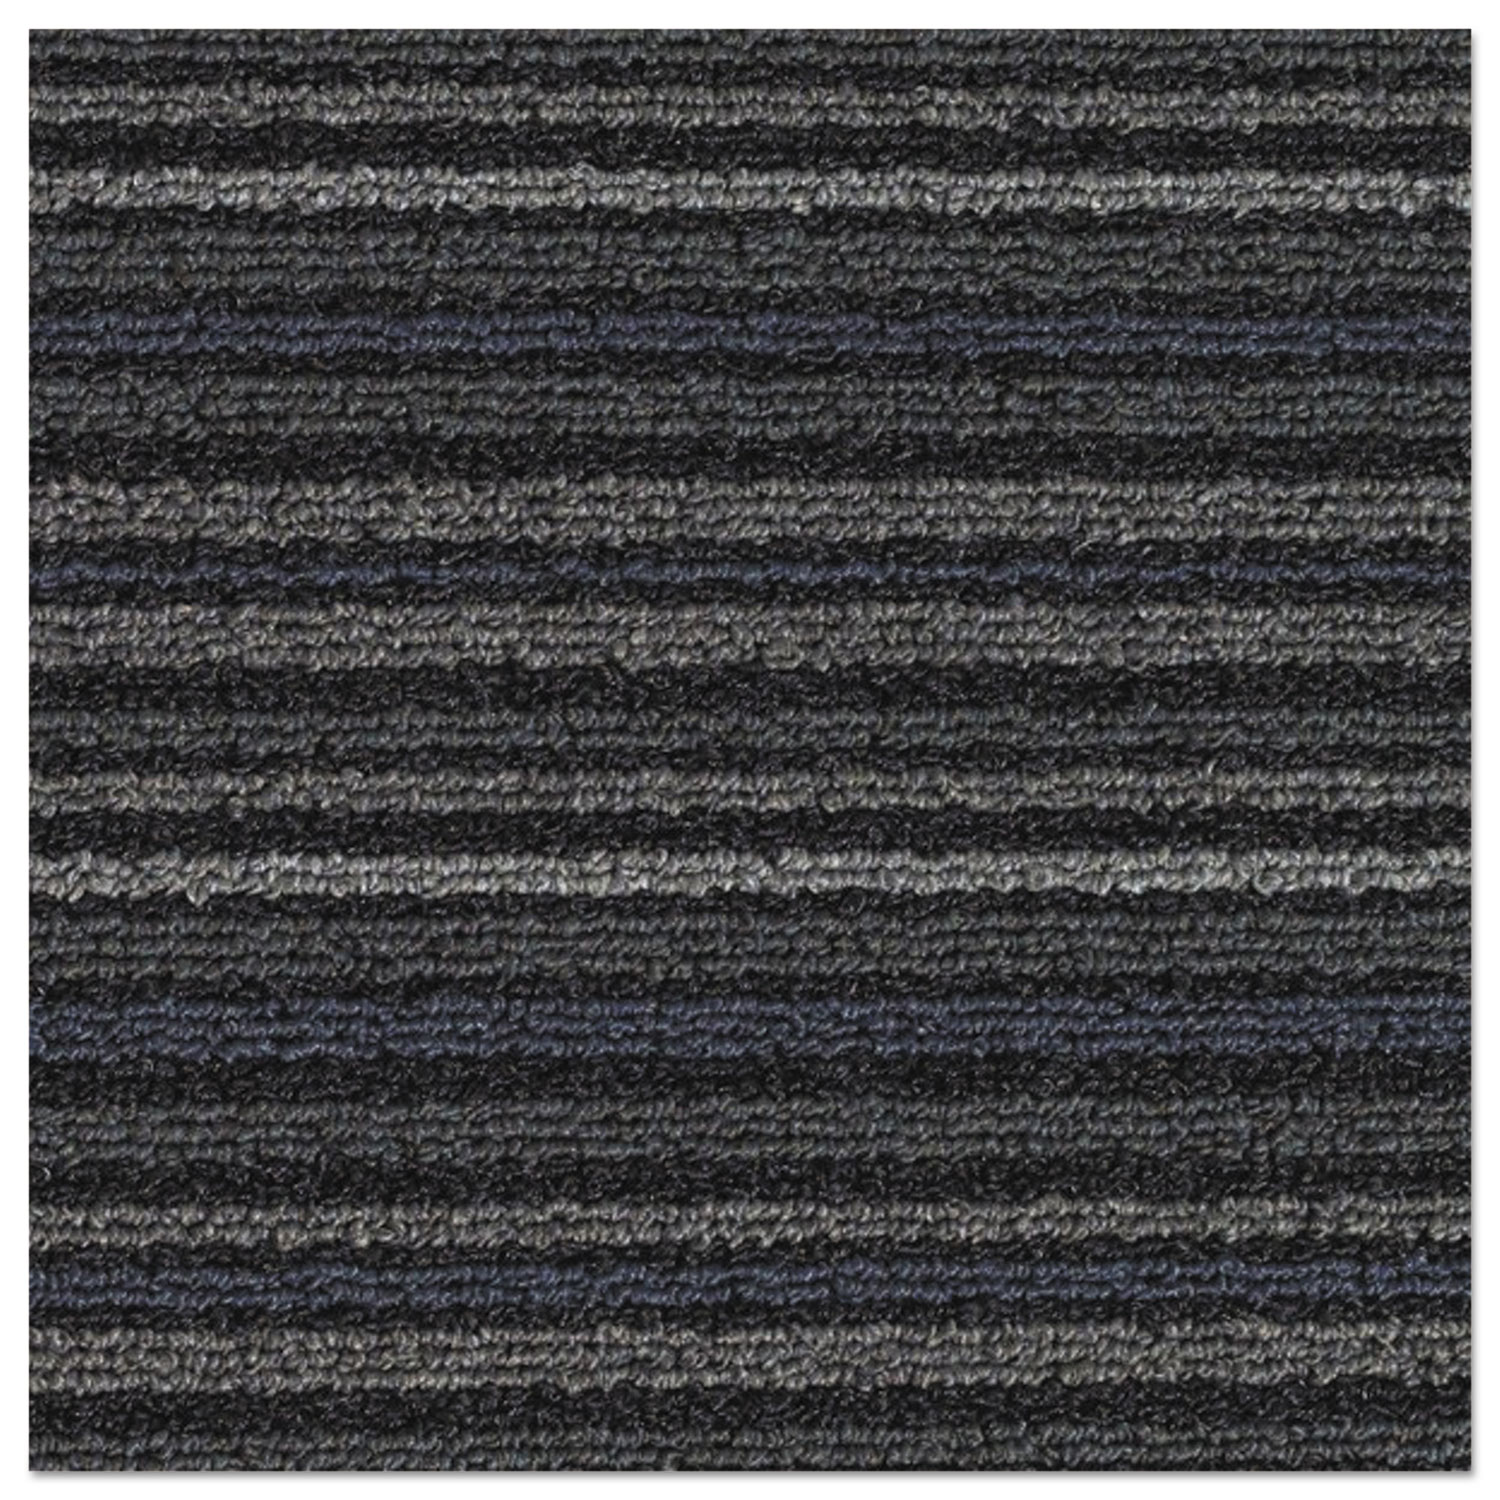 Nomad 7000 Heavy Traffic Carpet Matting, Nylon/Polypropylene, 48 x 72, Blue